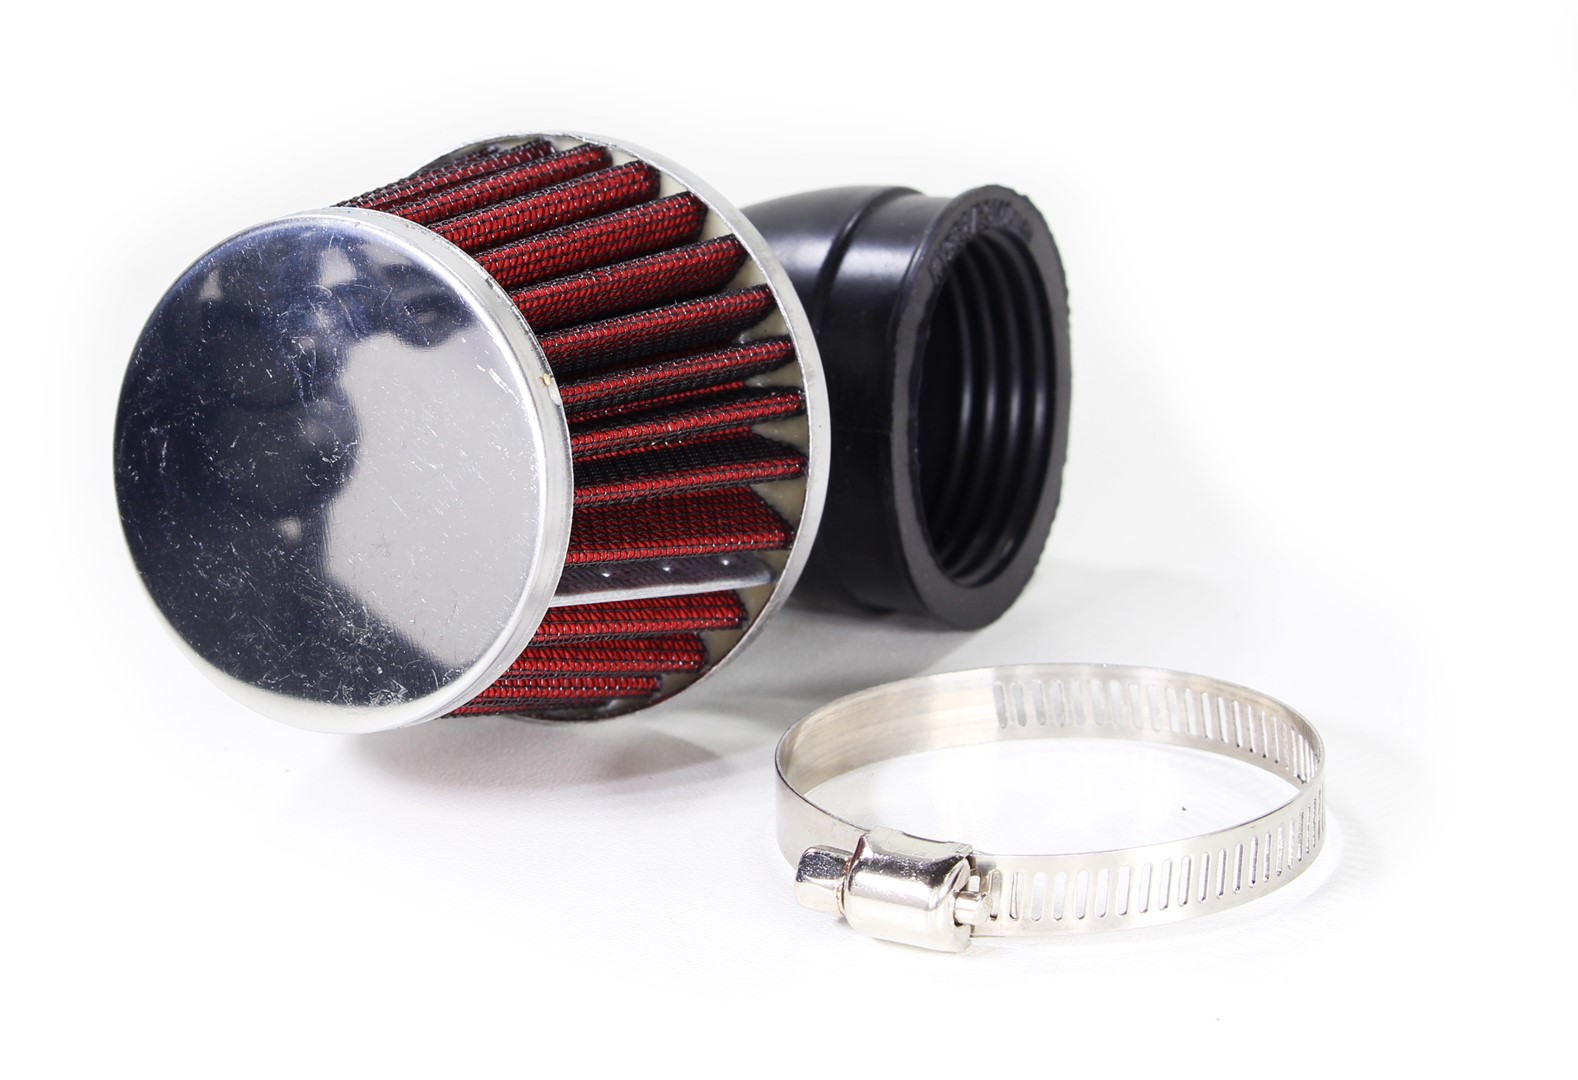 Vzduchový filtr Sport 38mm pro dětské čtyřkolky, pitbike